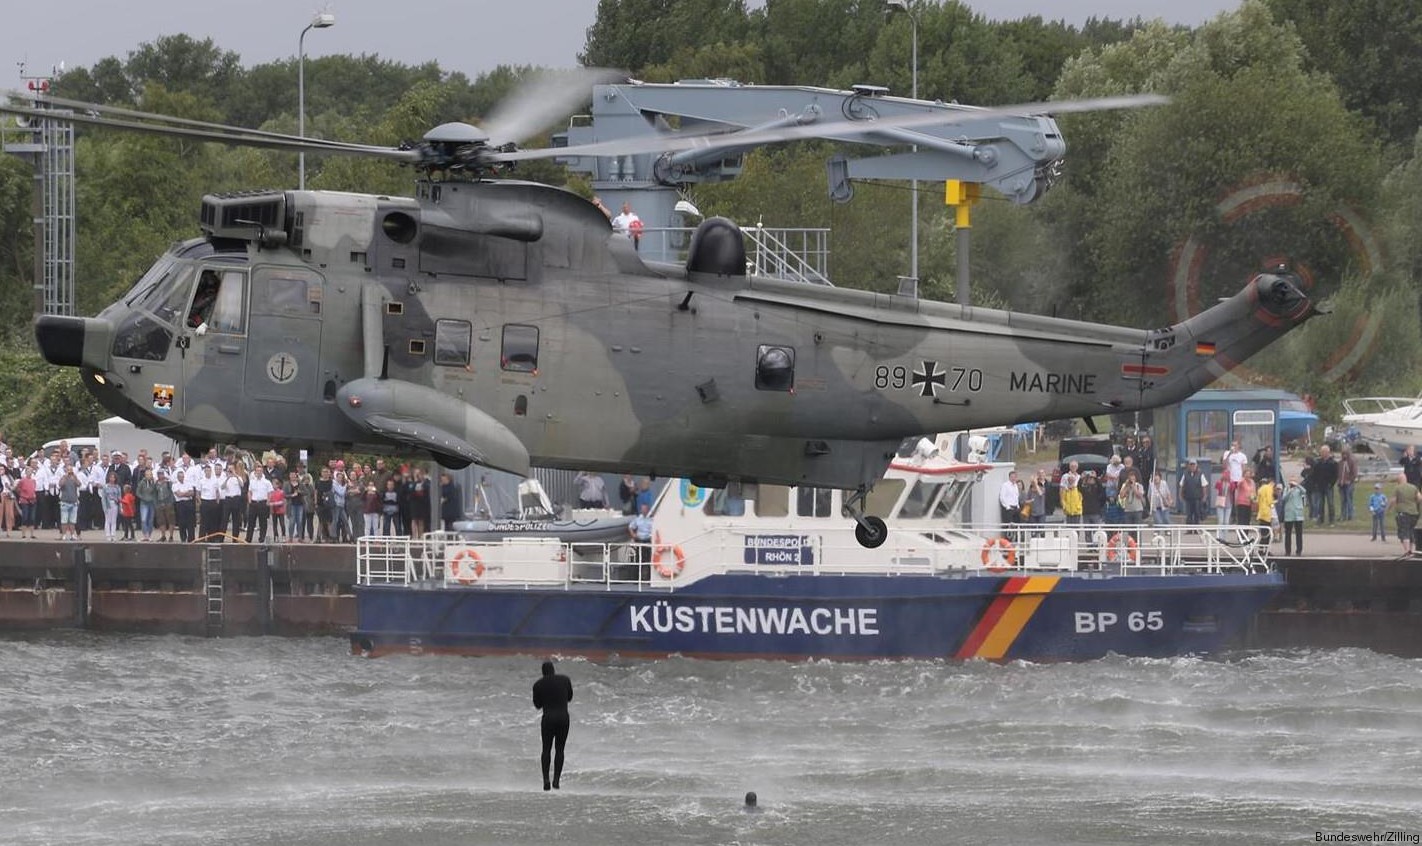 sea king mk.41 westland naval helicopter german navy deutsche marine sar 20